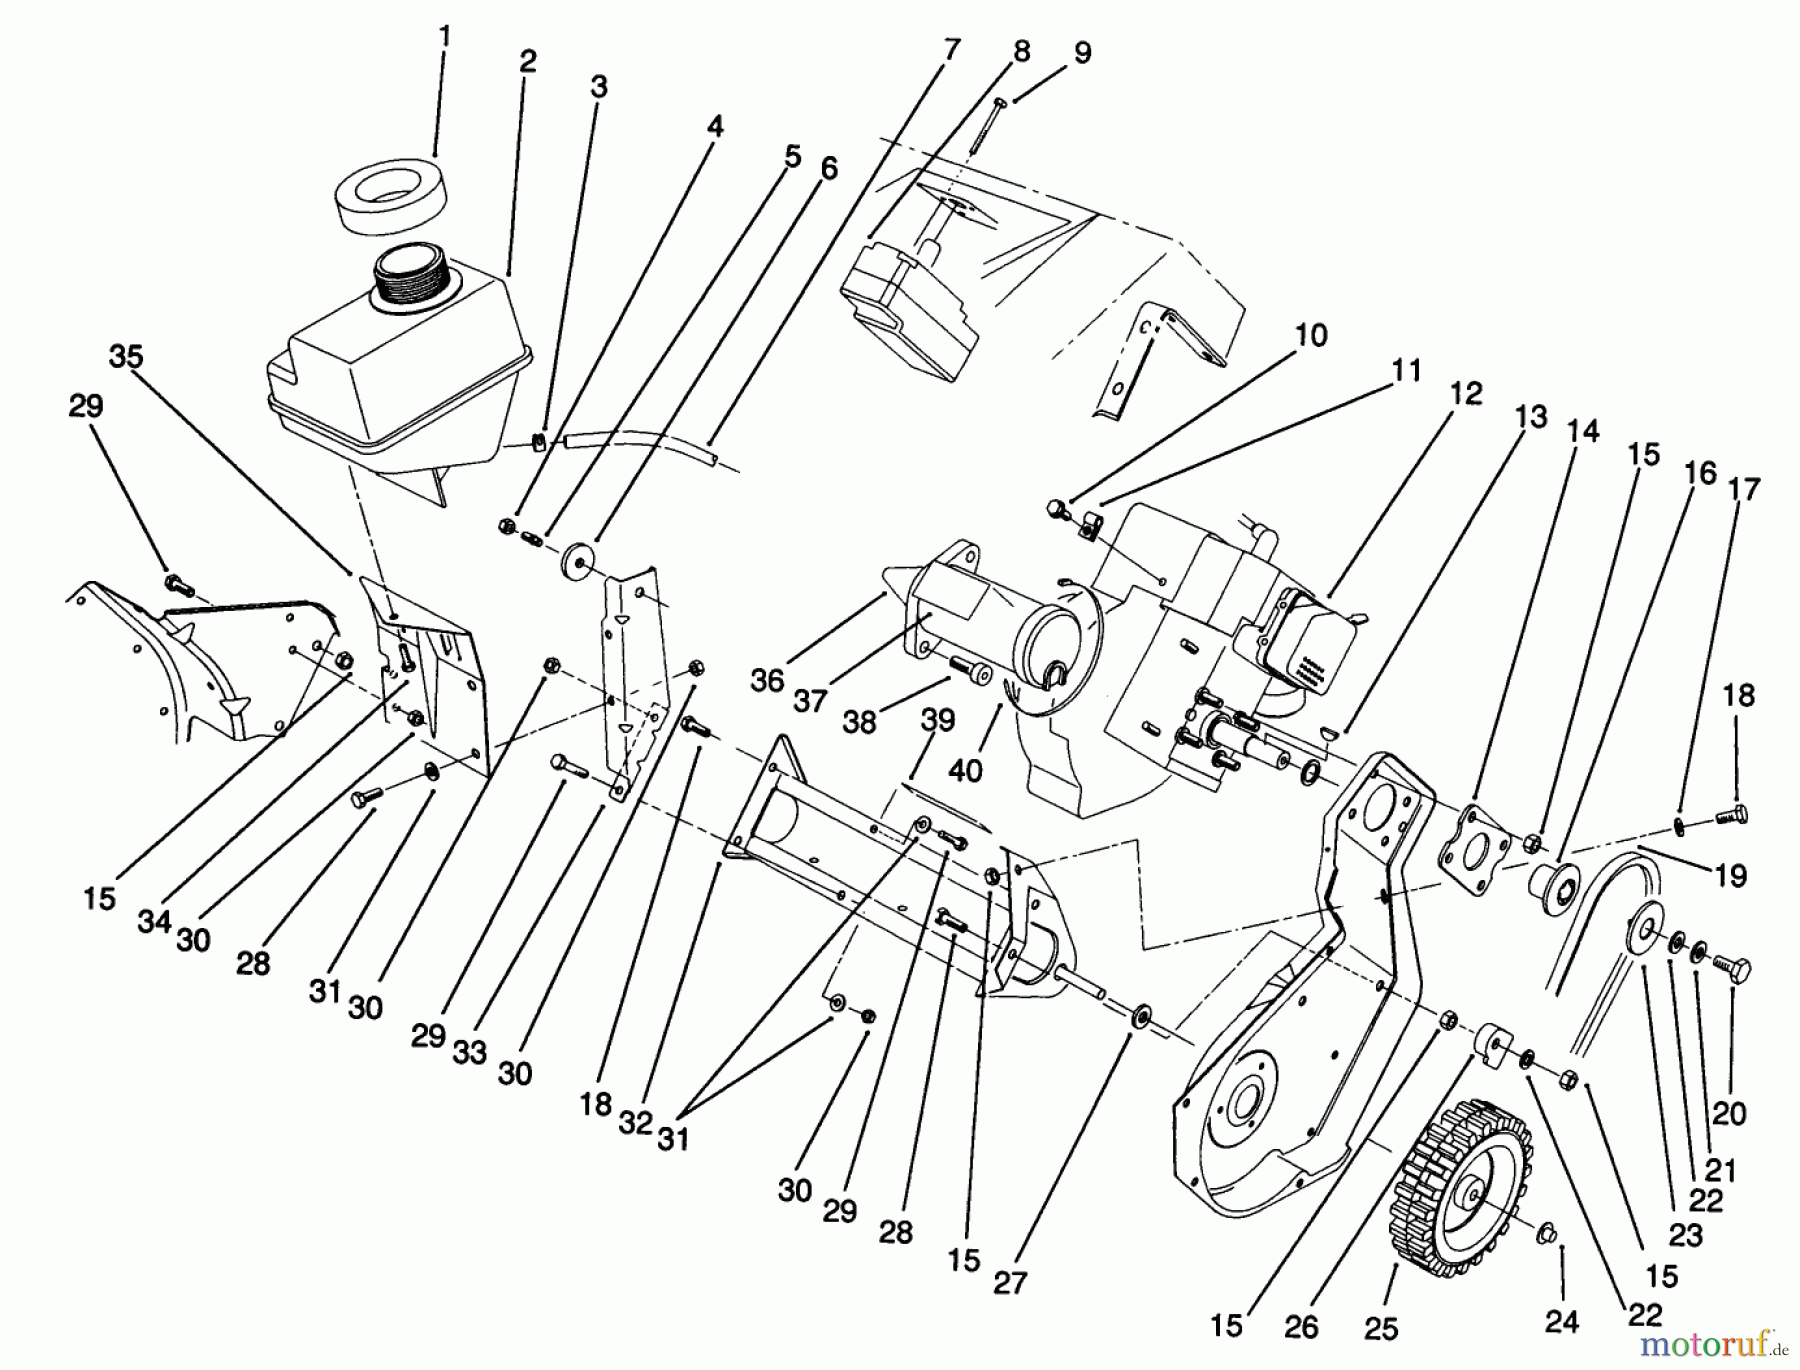  Toro Neu Snow Blowers/Snow Throwers Seite 1 38195 - Toro CCR 1000 Snowthrower, 1991 (1000001-1999999) ENGINE ASSEMBLY